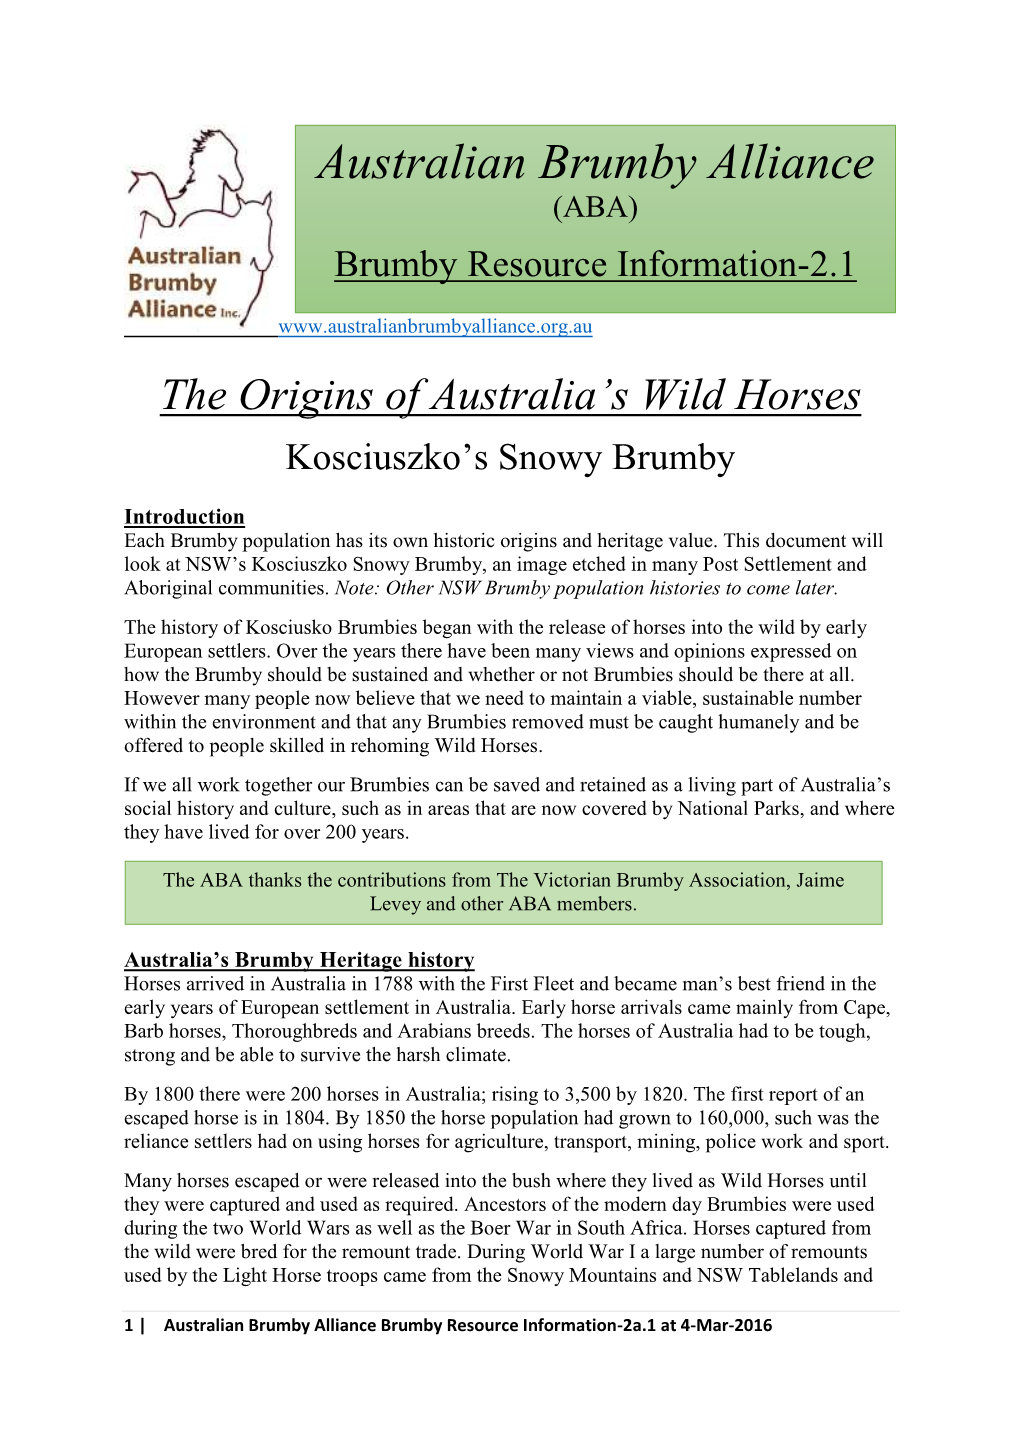 The Origin of Australia's Wild Horses